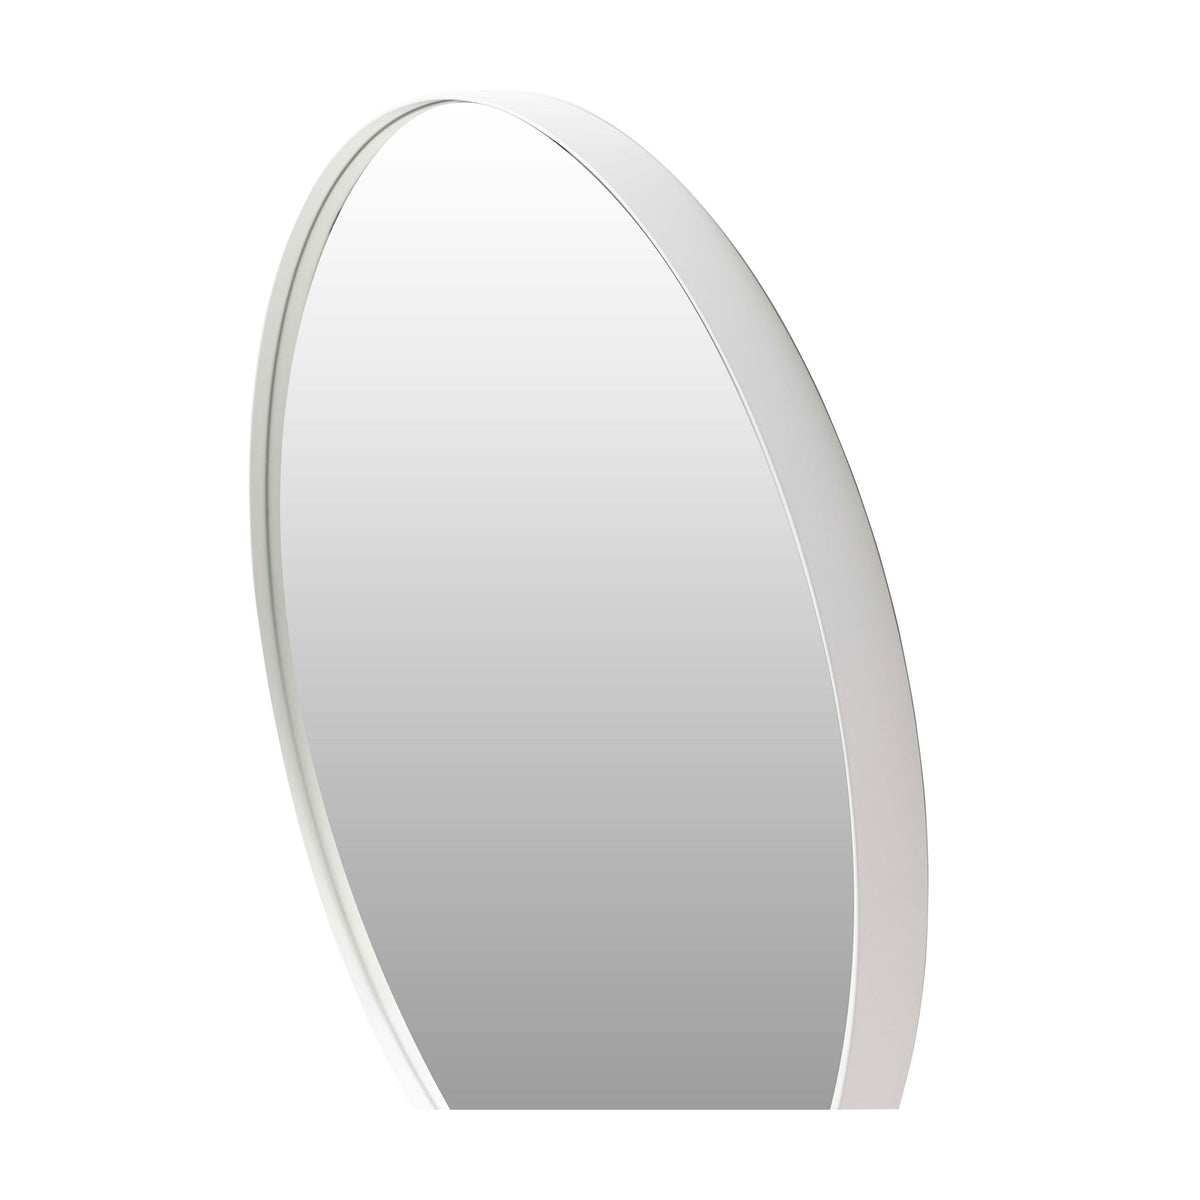 Barcelona White Round Mirror - 800mm